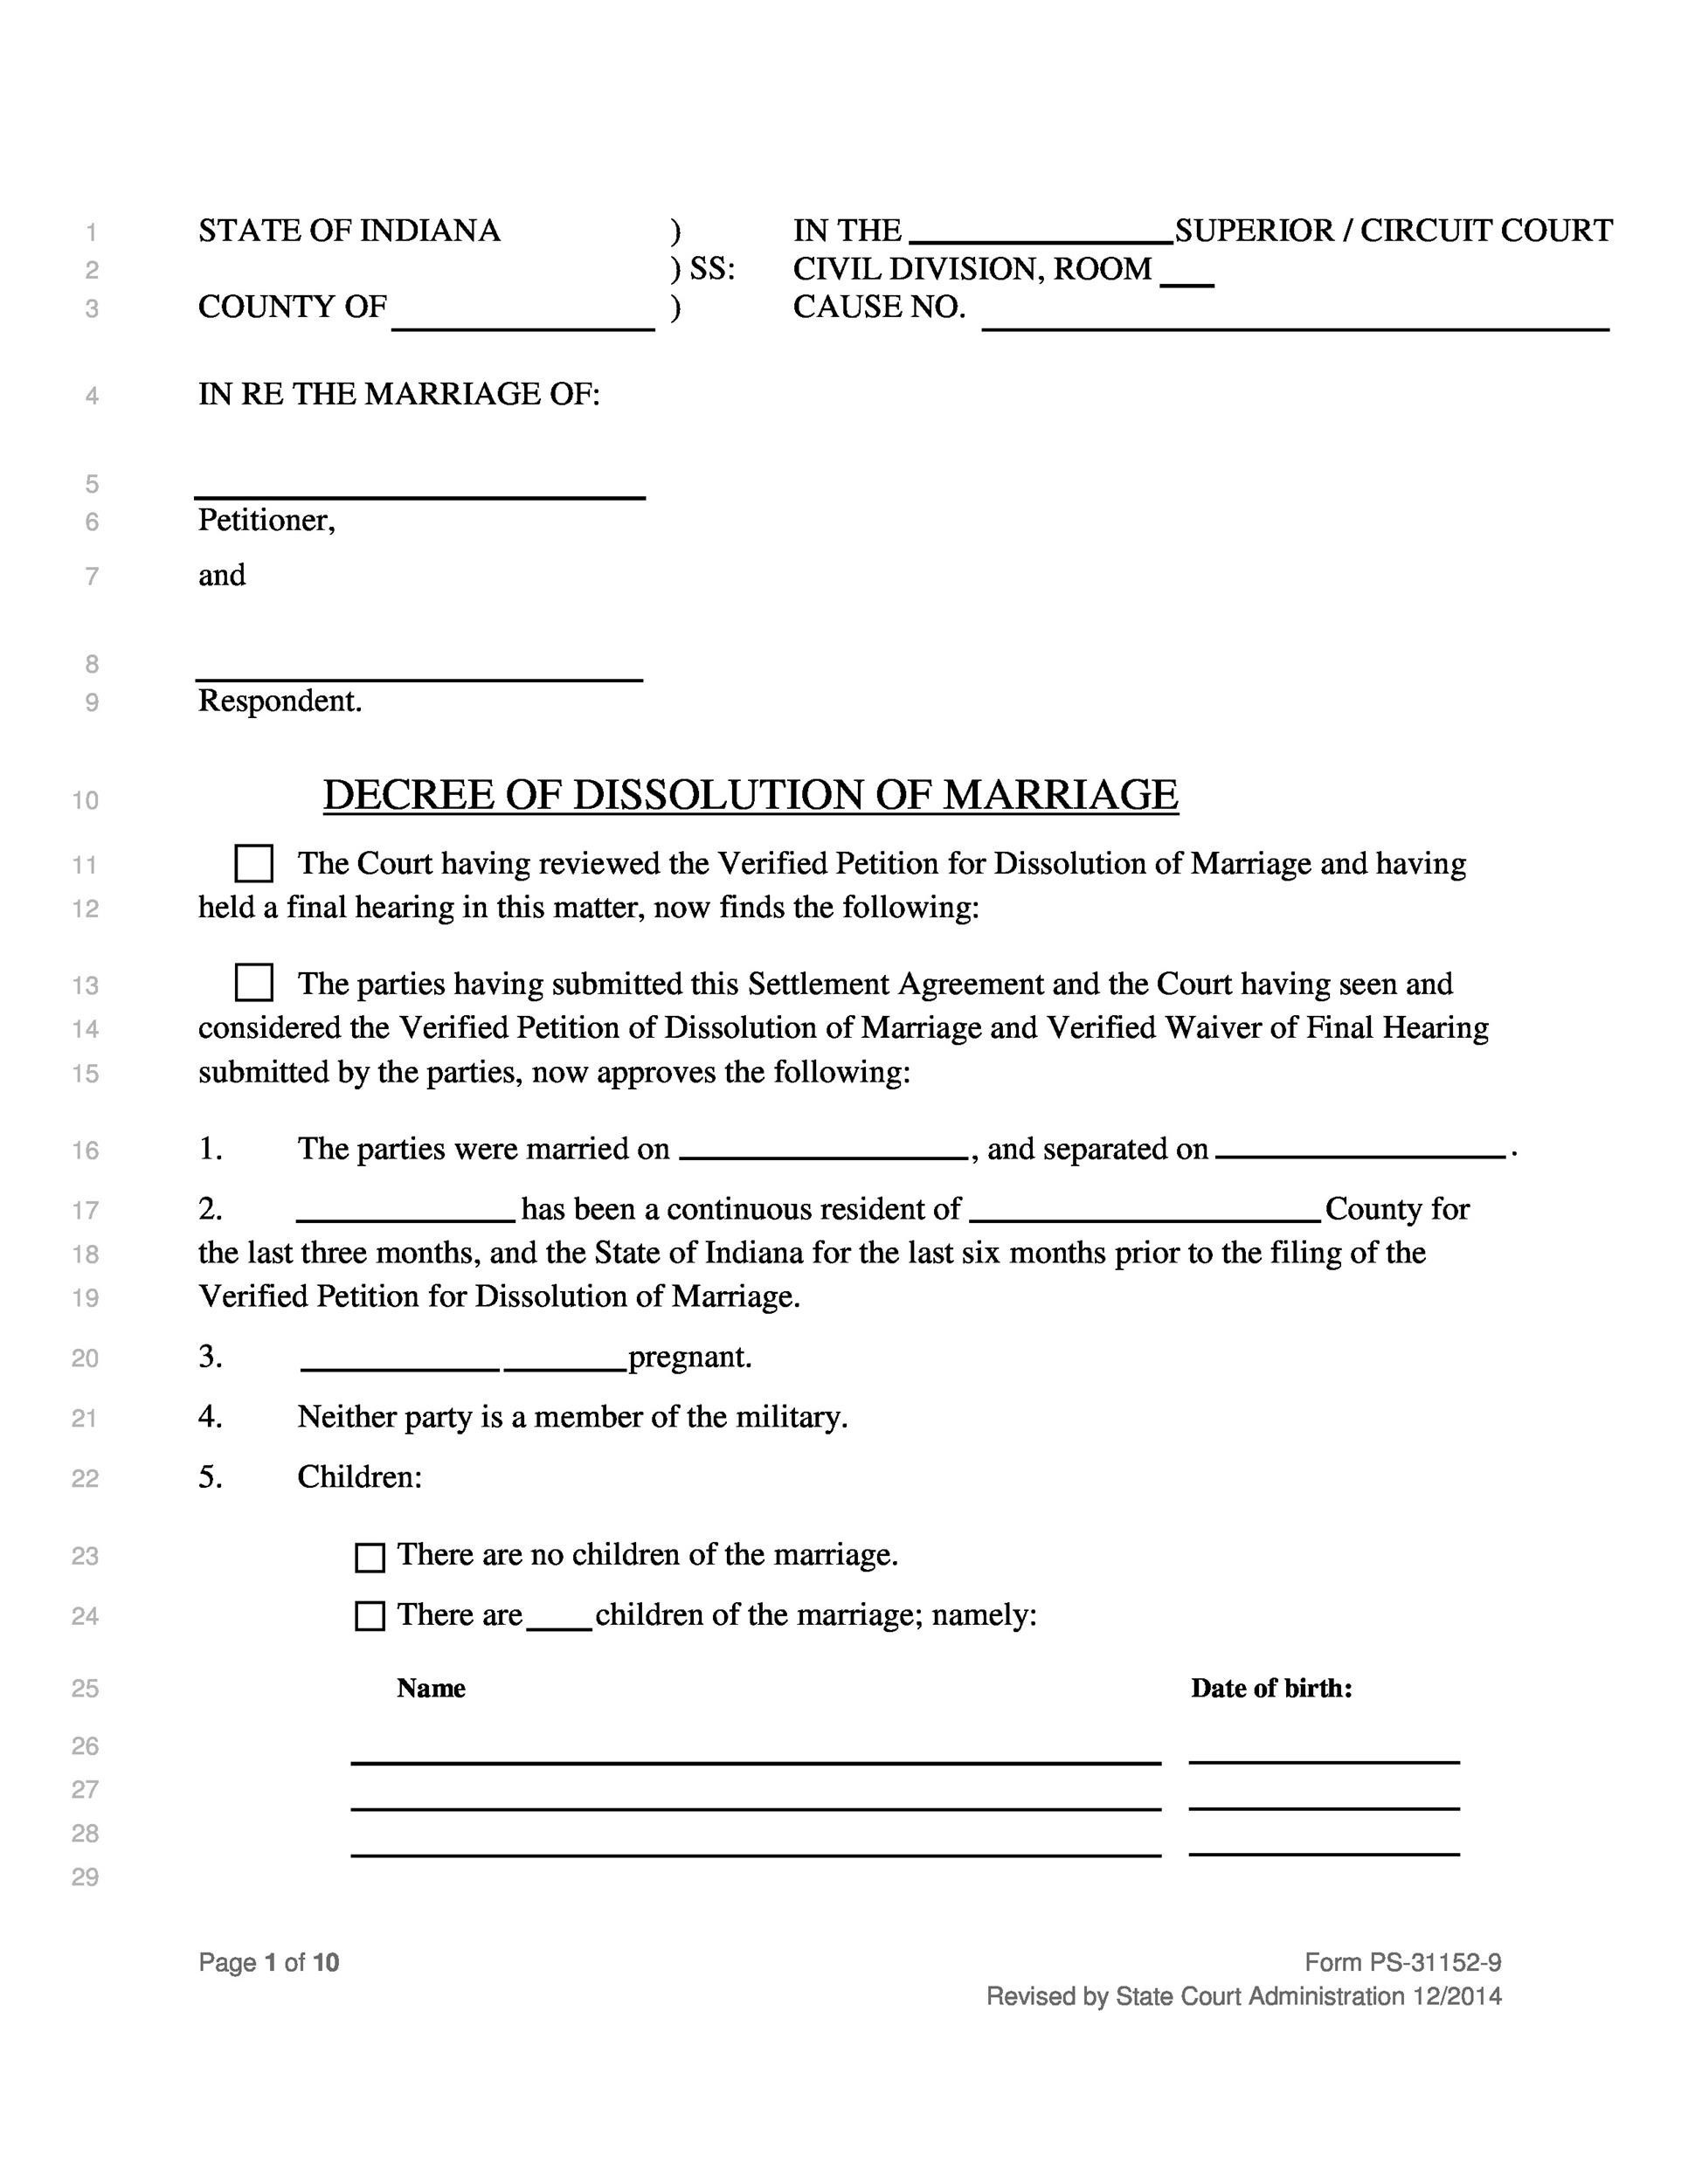 40 Free Divorce Papers (Printable) ᐅ TemplateLab